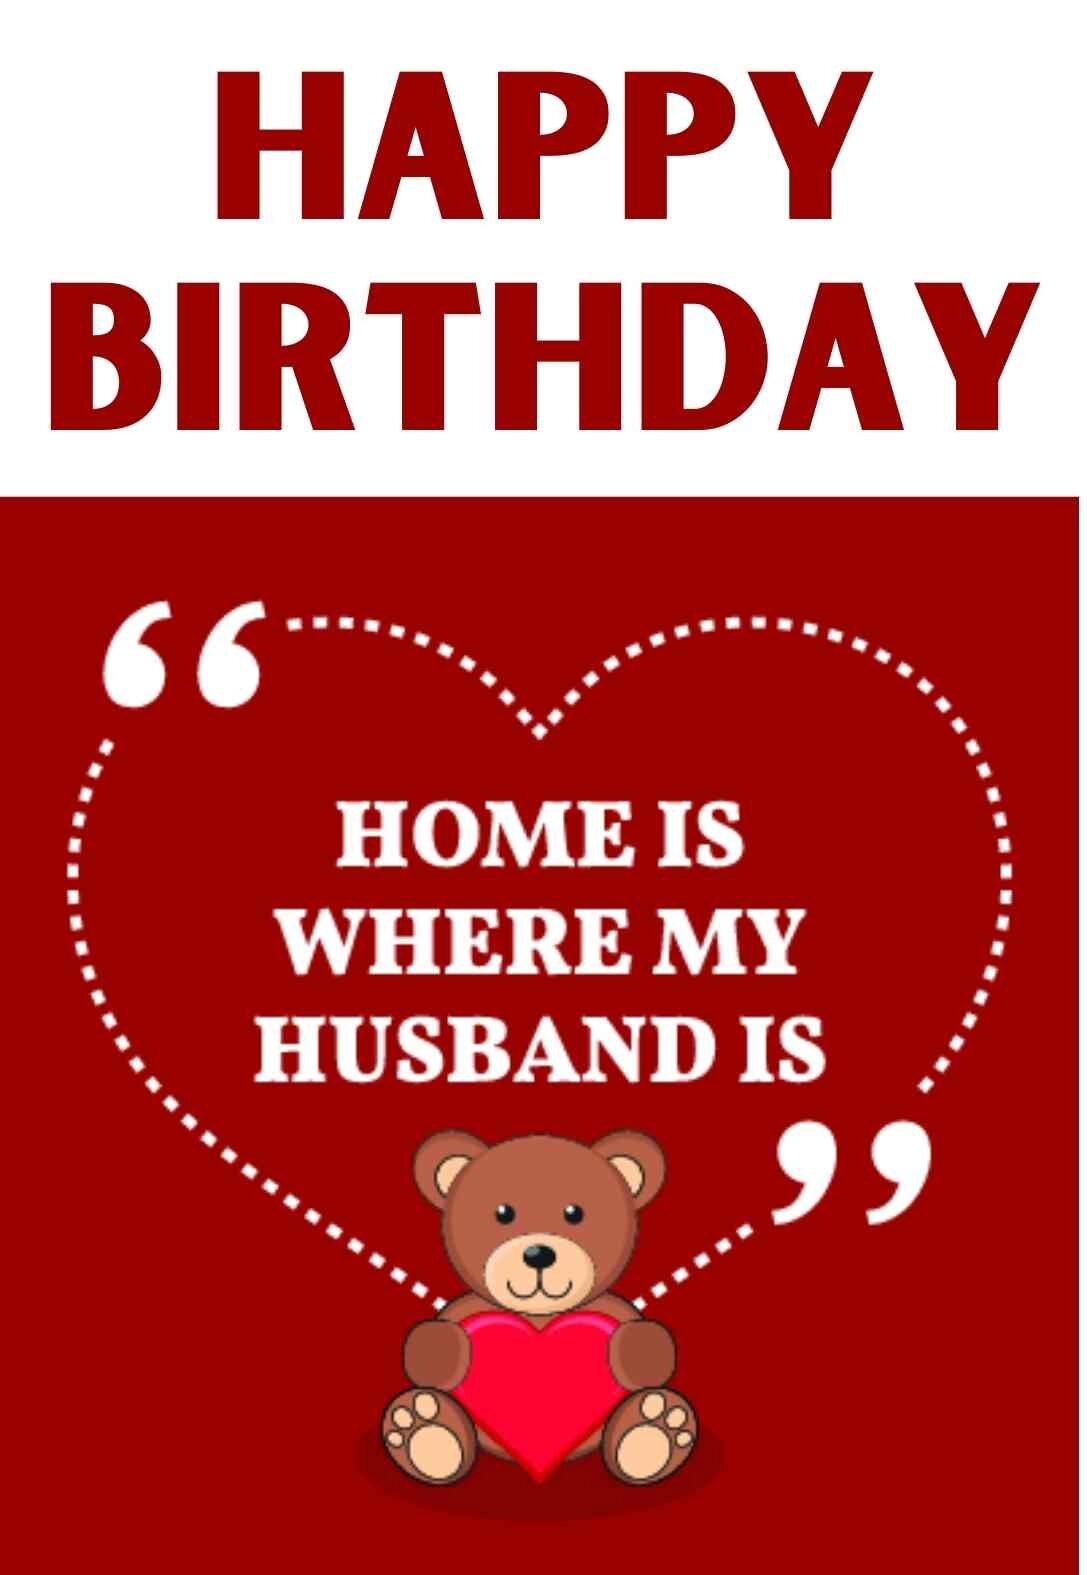 printable-birthday-cards-for-husband-printable-card-free-printable